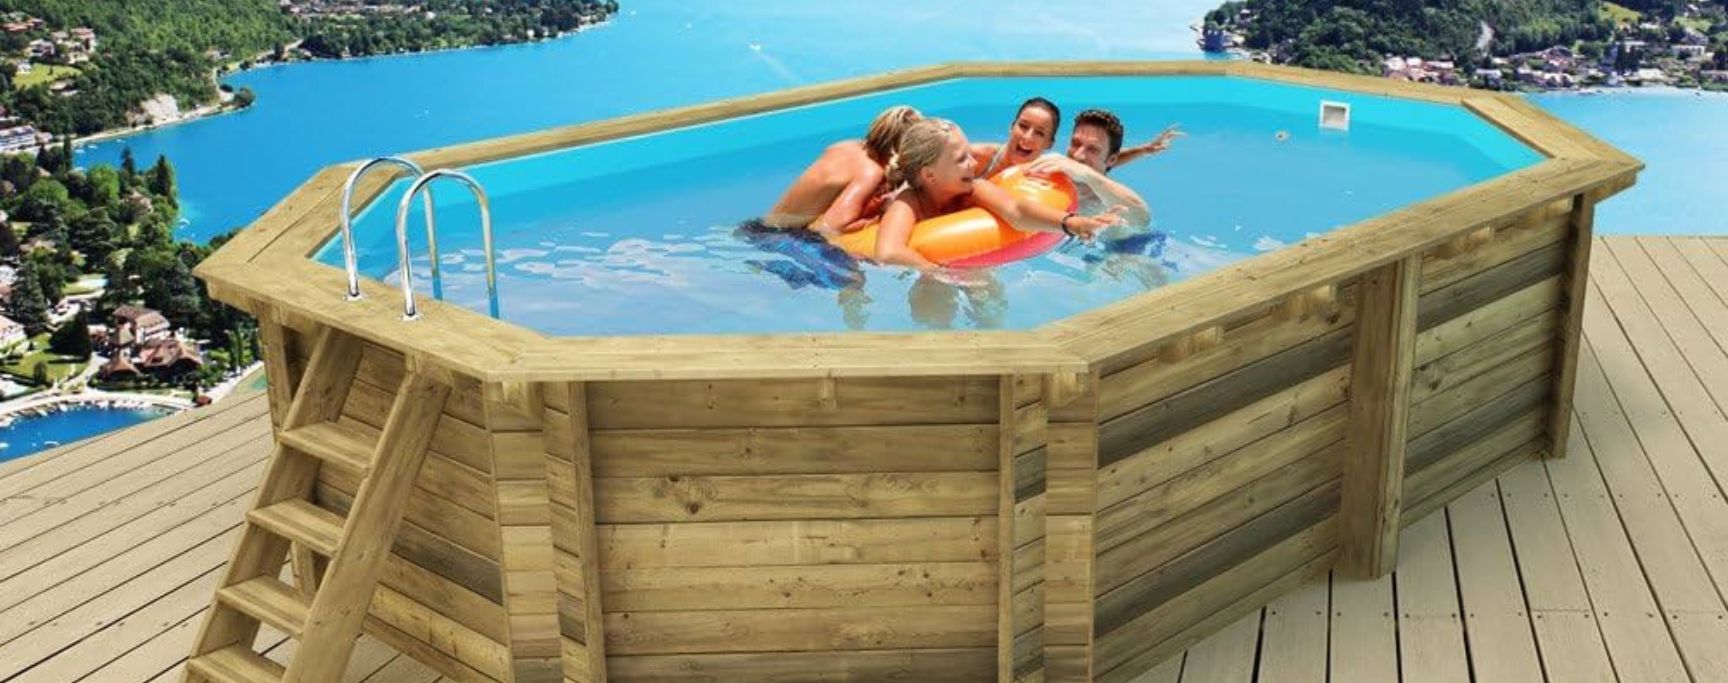 fabriquer une piscine hors sol en bois